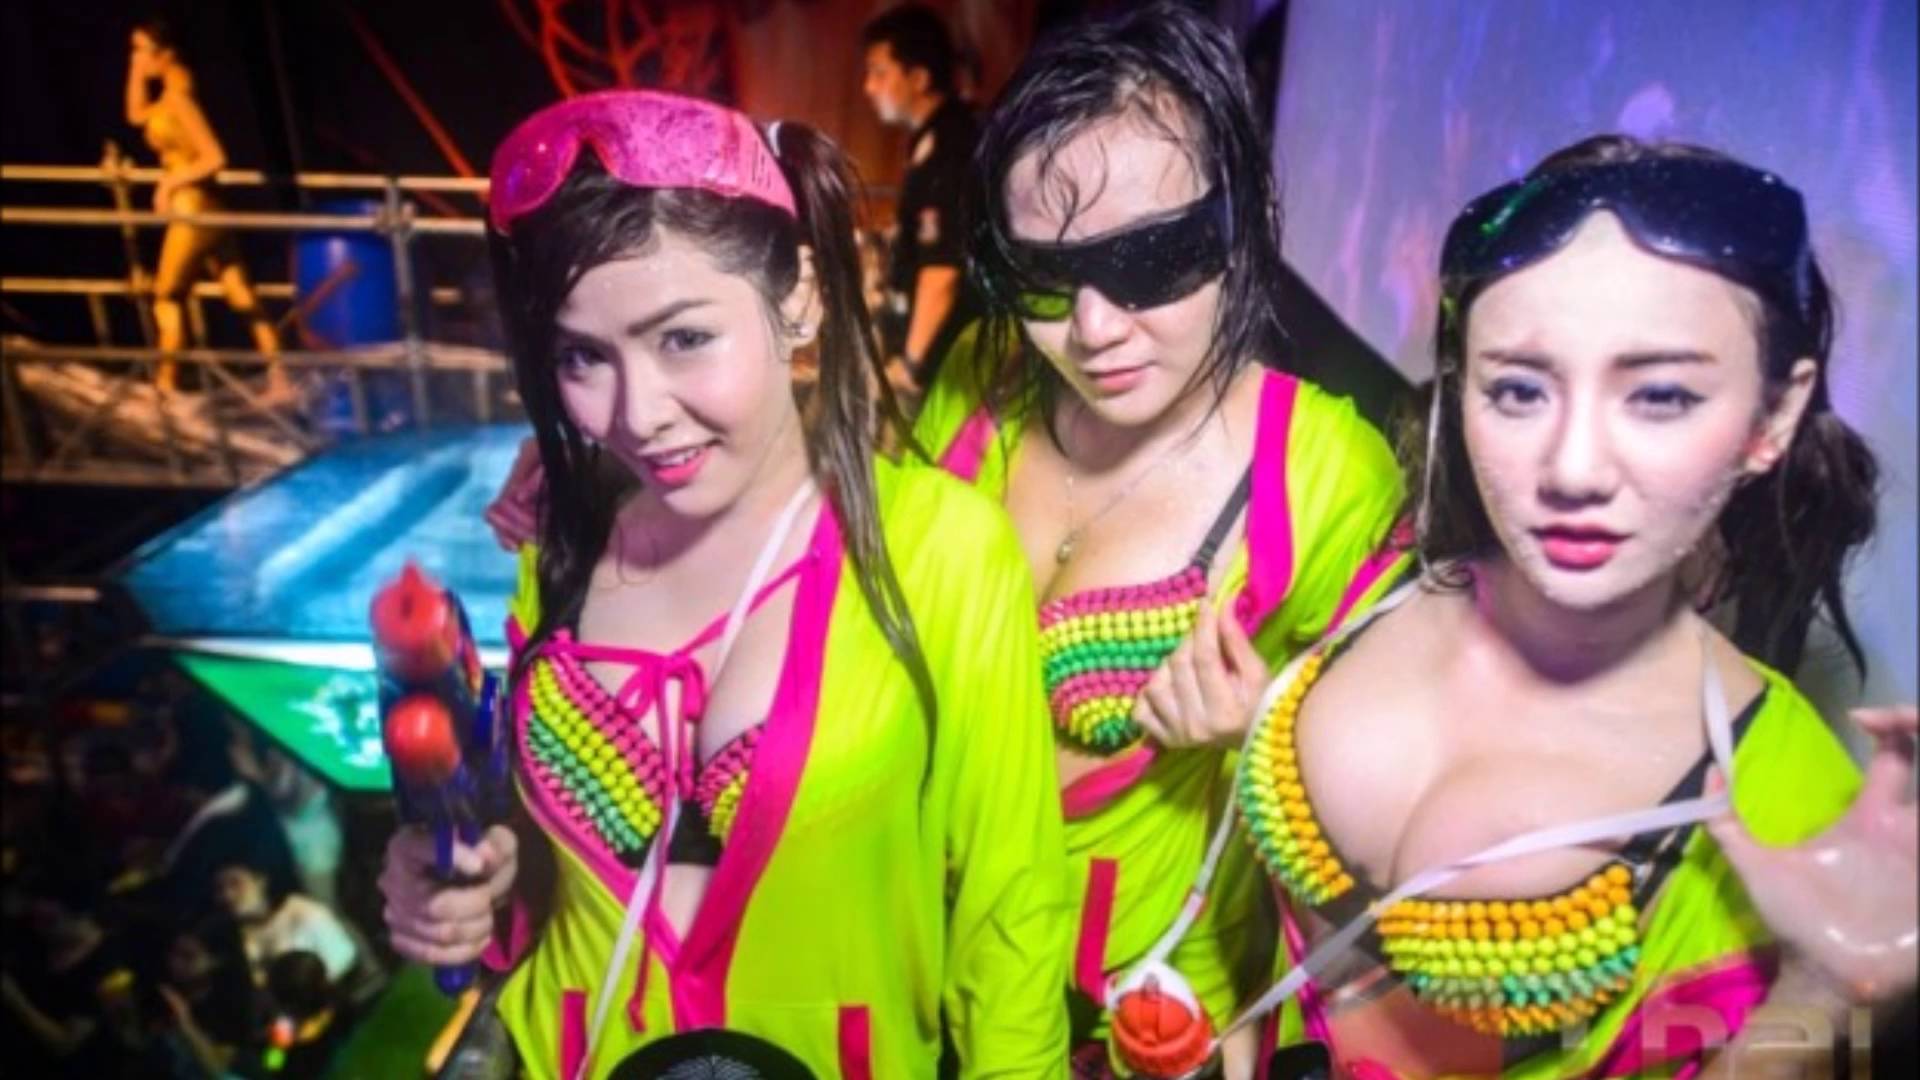 Bangkok Girls nightlife - YouTube. 